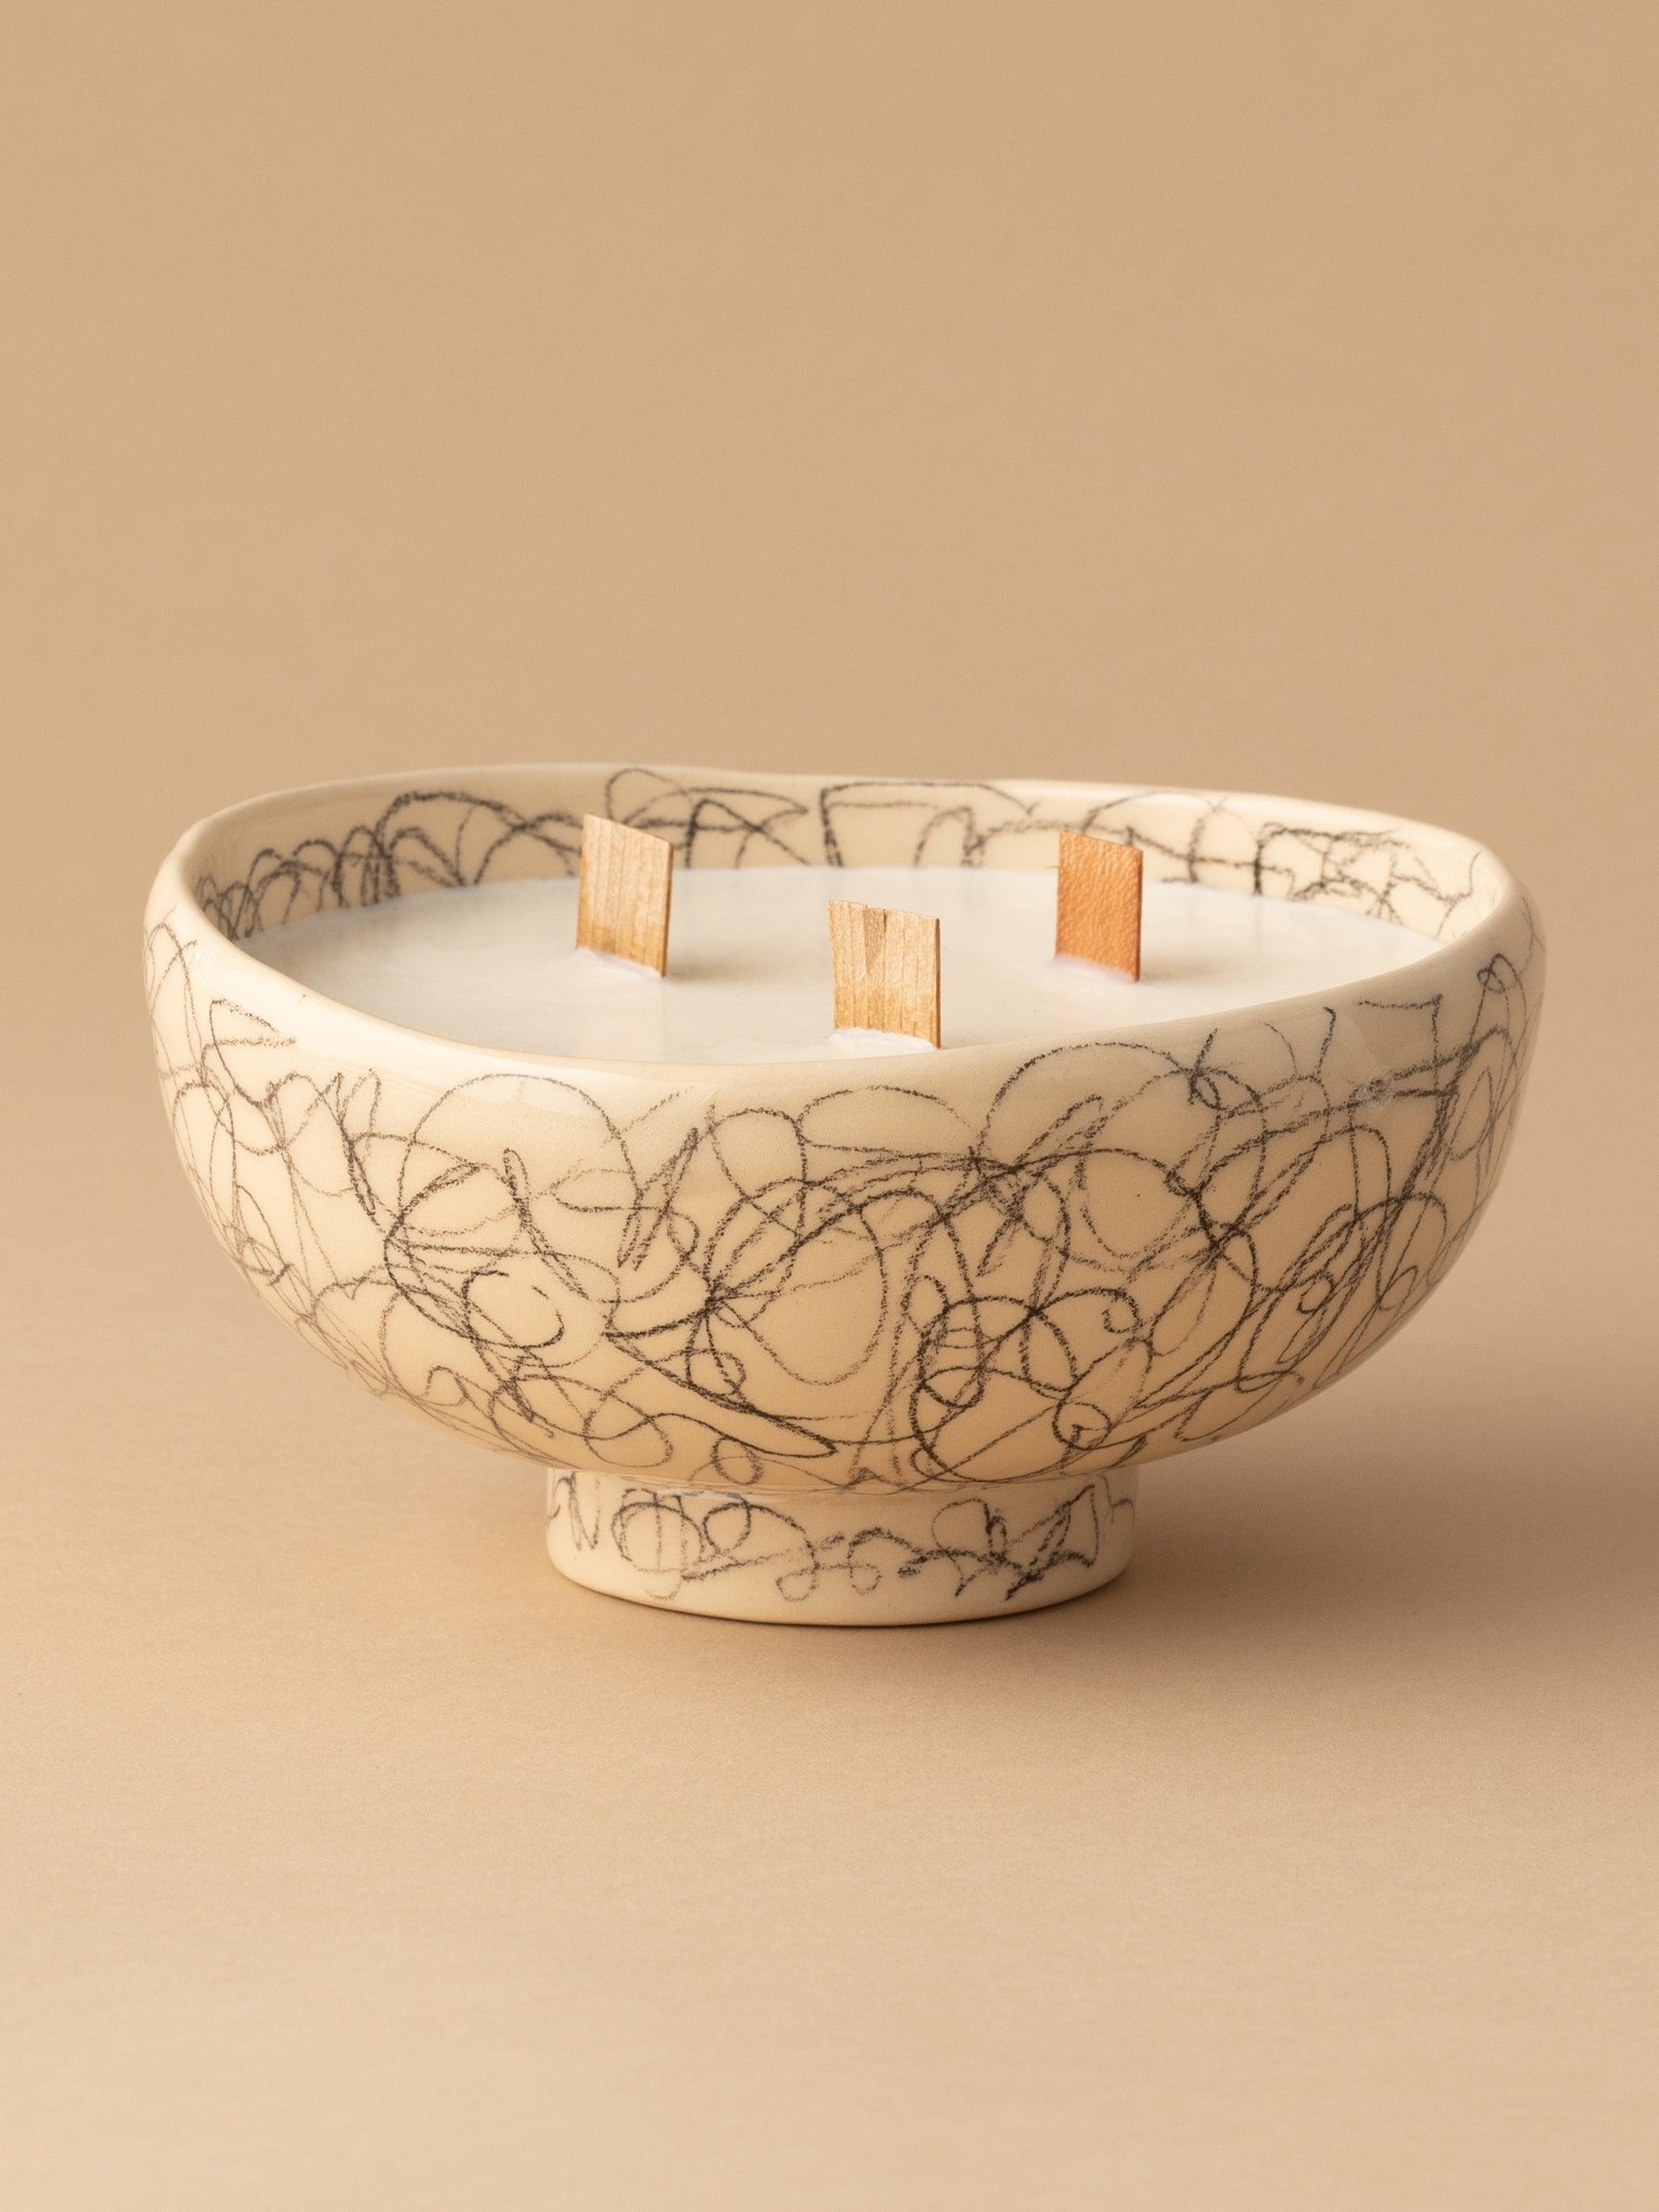 Lumanare ceramica "Charcoal" M - PARIS14A.RO